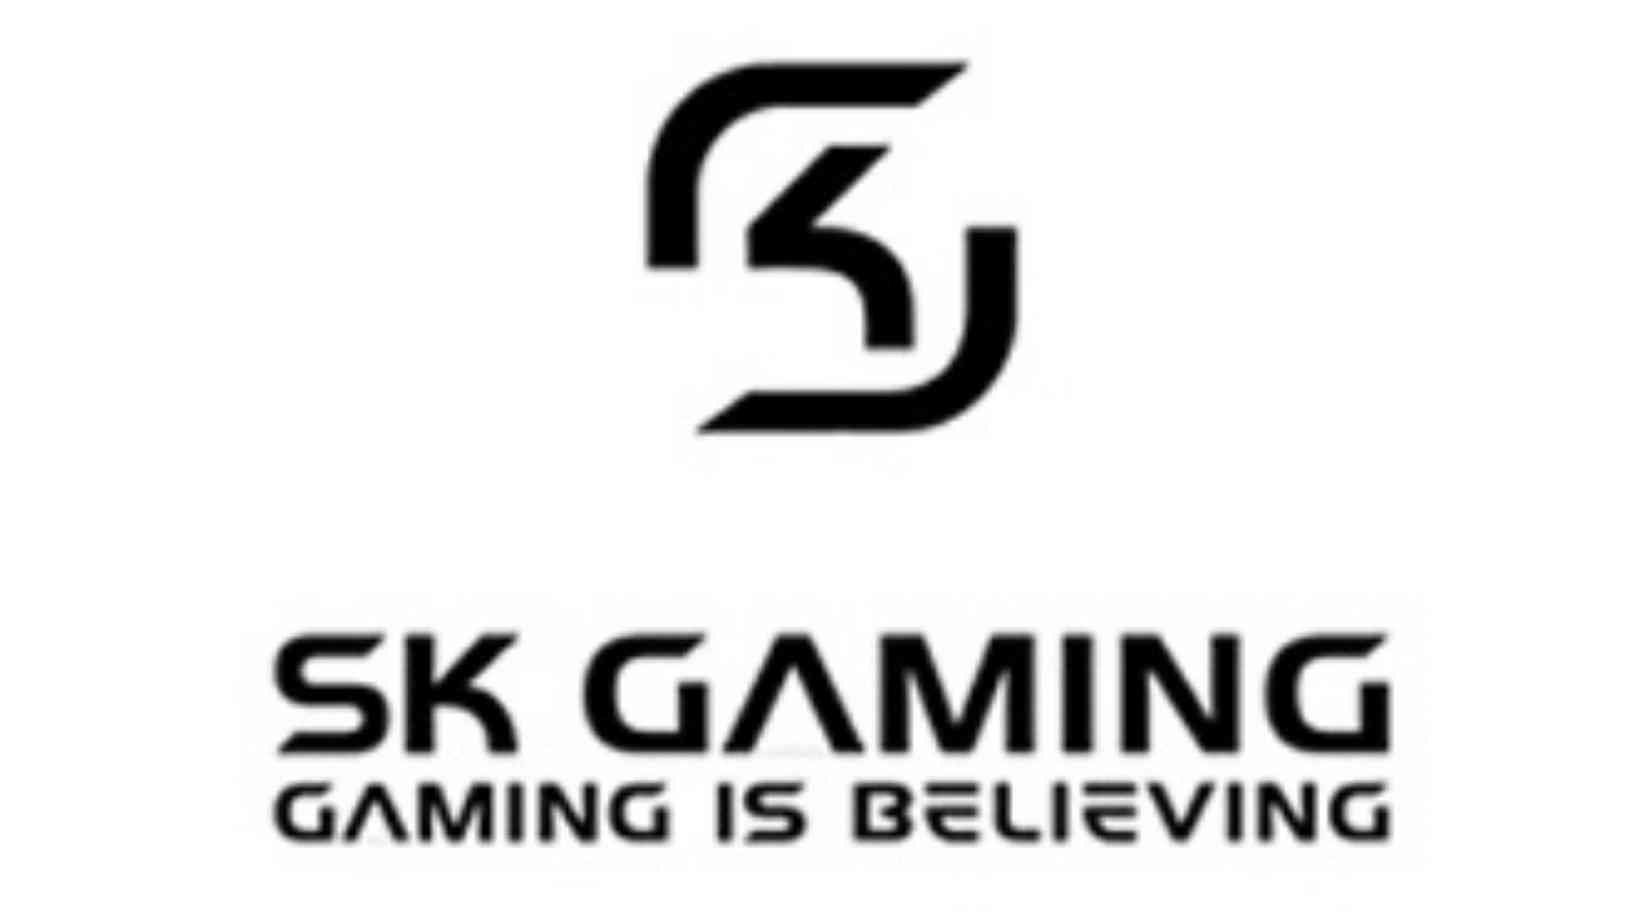 SK Gaming Members